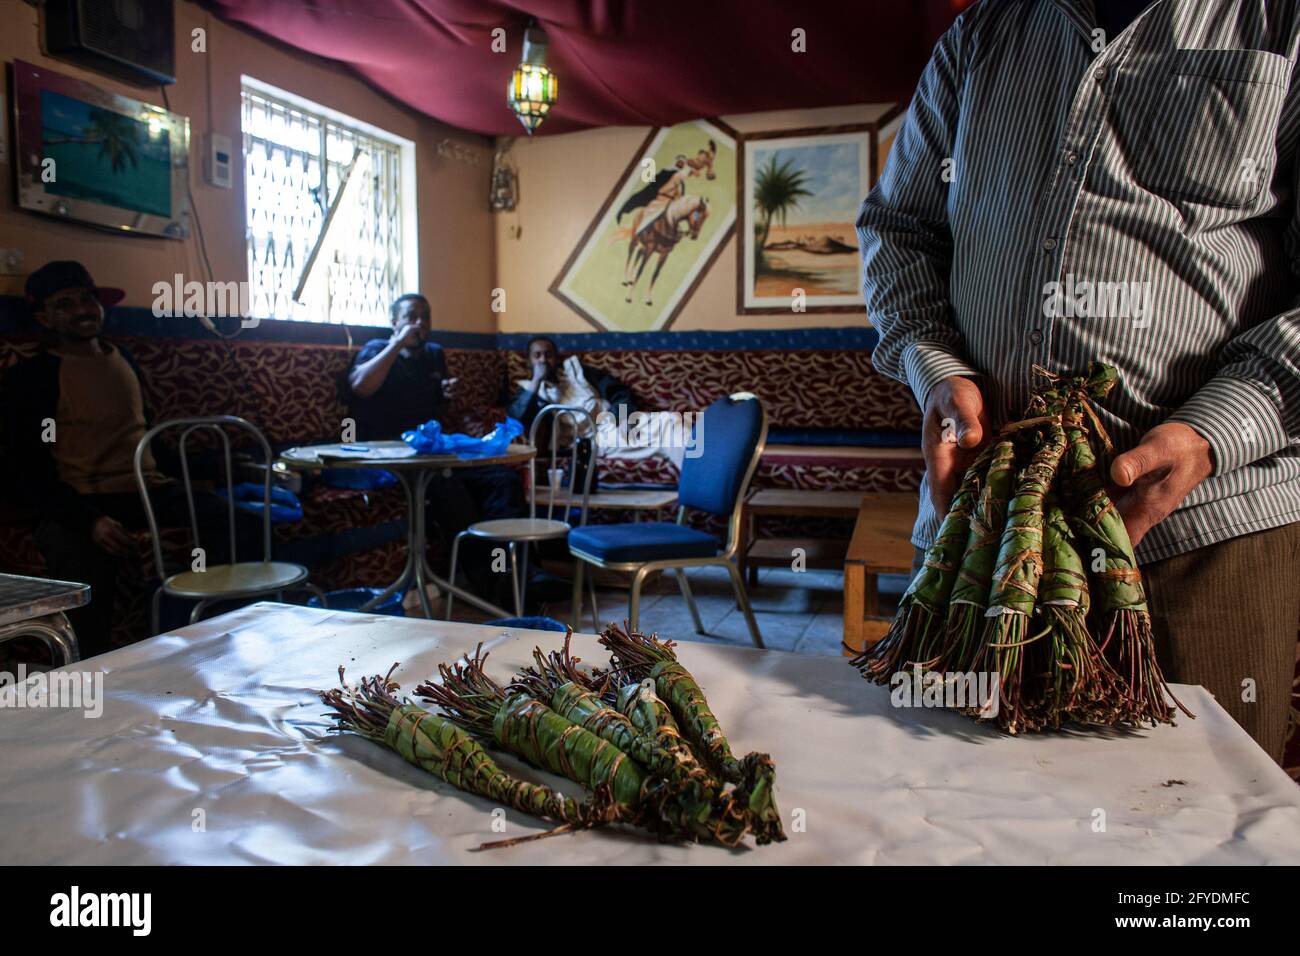 Camden, Londres, Royaume-Uni. La drogue Khat sur la table dans le café local somalien. La drogue principalement utilisée par les Somaliens devient illégale au Royaume-Uni. Banque D'Images